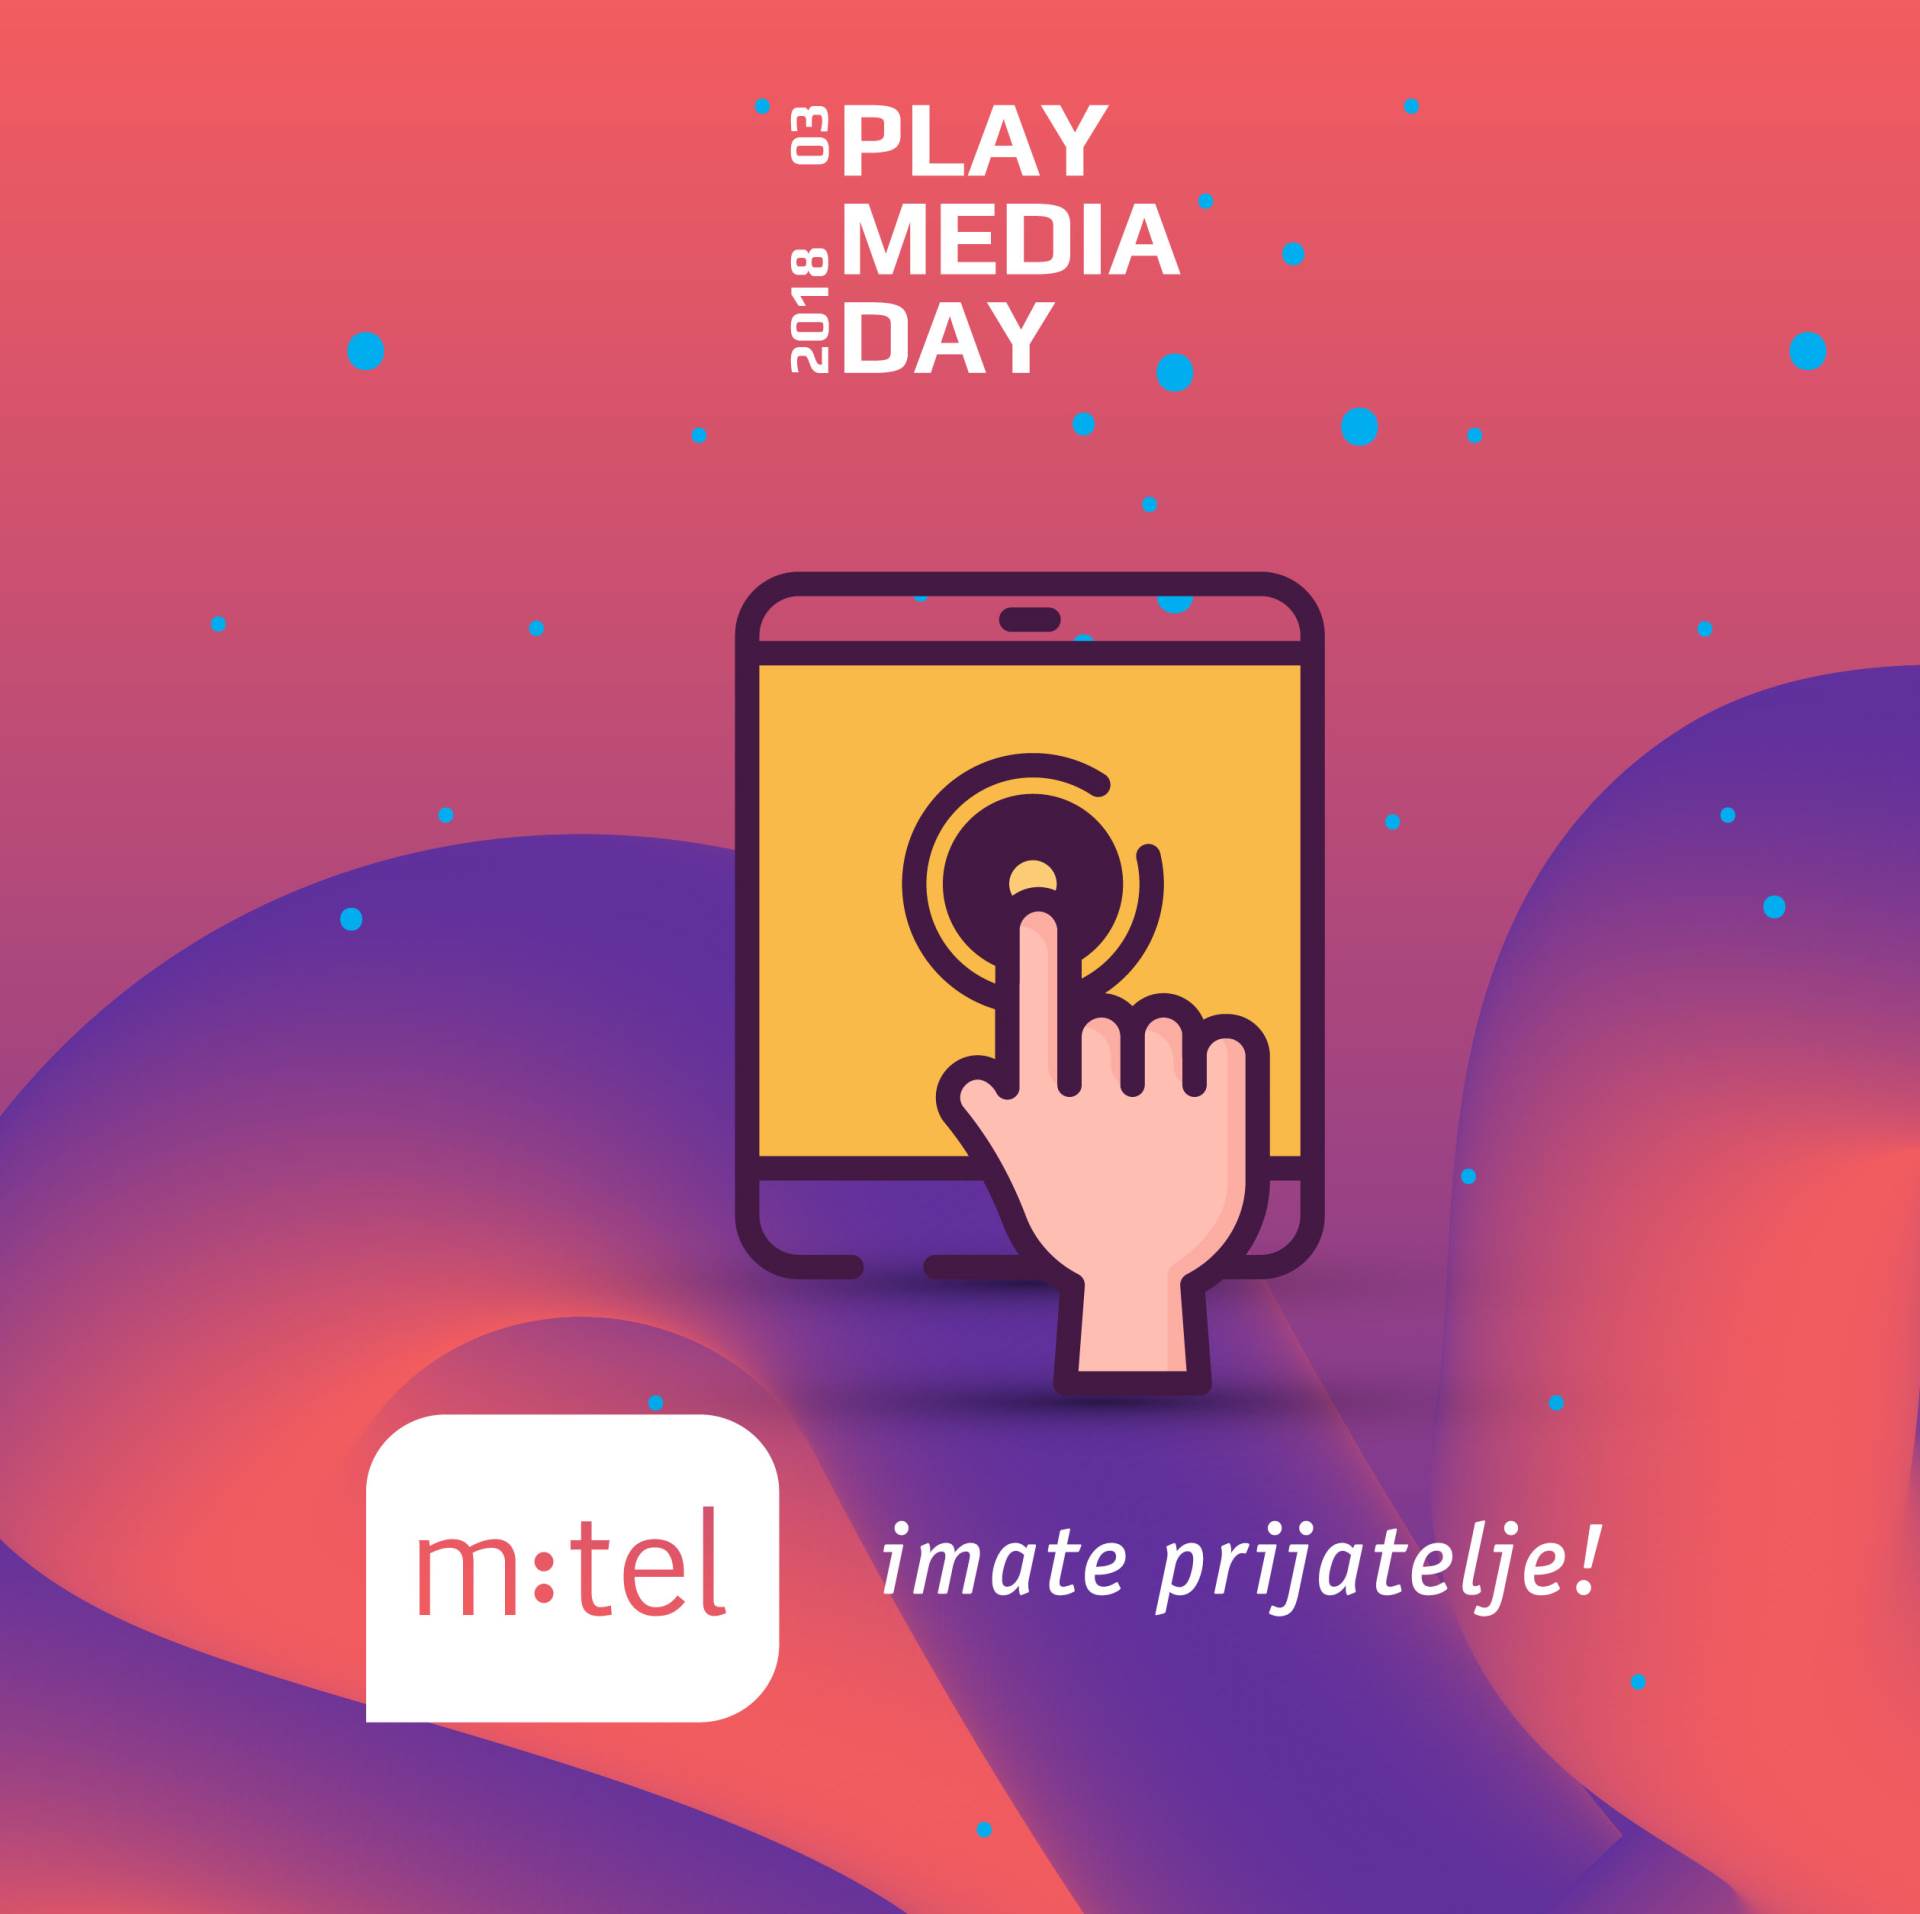   m:tel poklanja kotizacije za Play Media Day!  